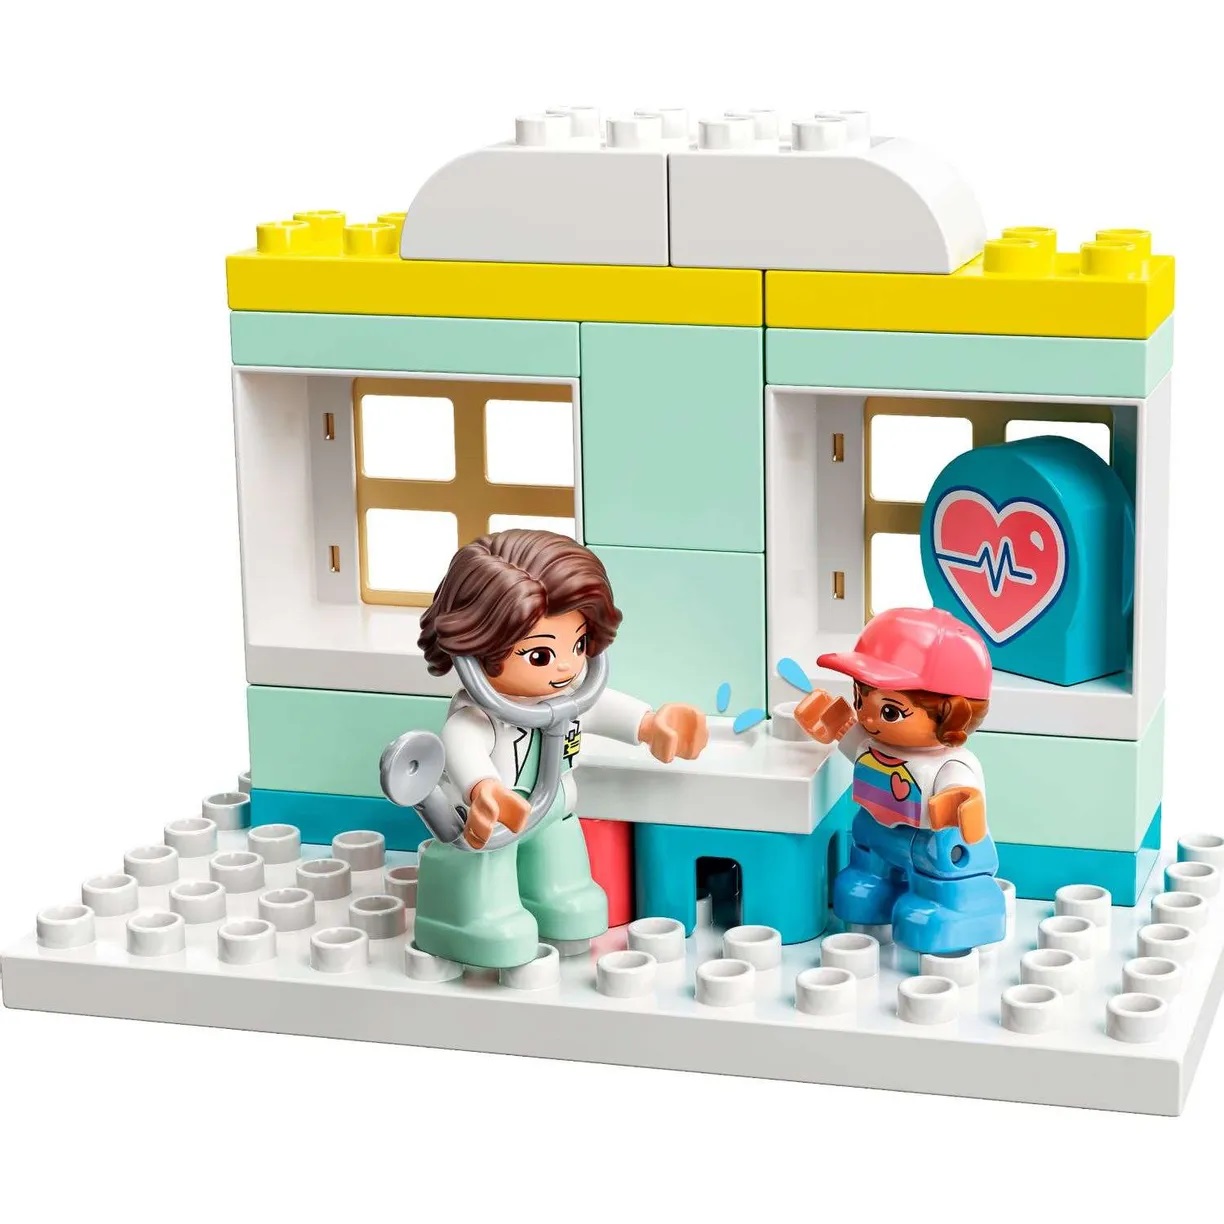 Lego Duplo 10968 Визит к врачу